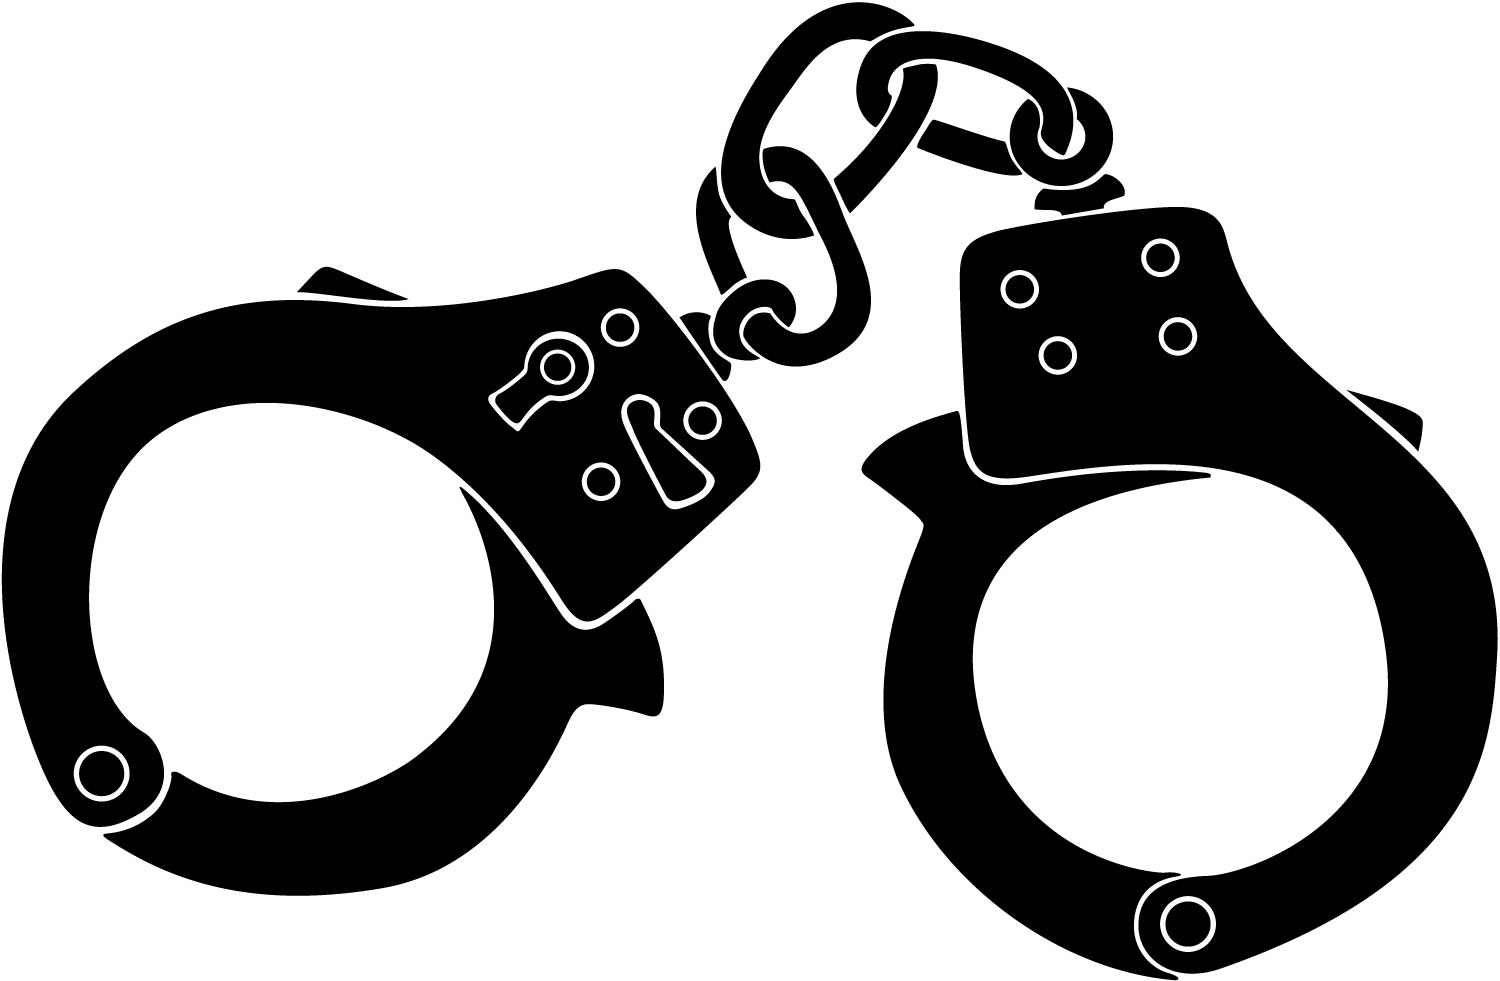 Free handcuffs cliparts download. Handcuff clipart